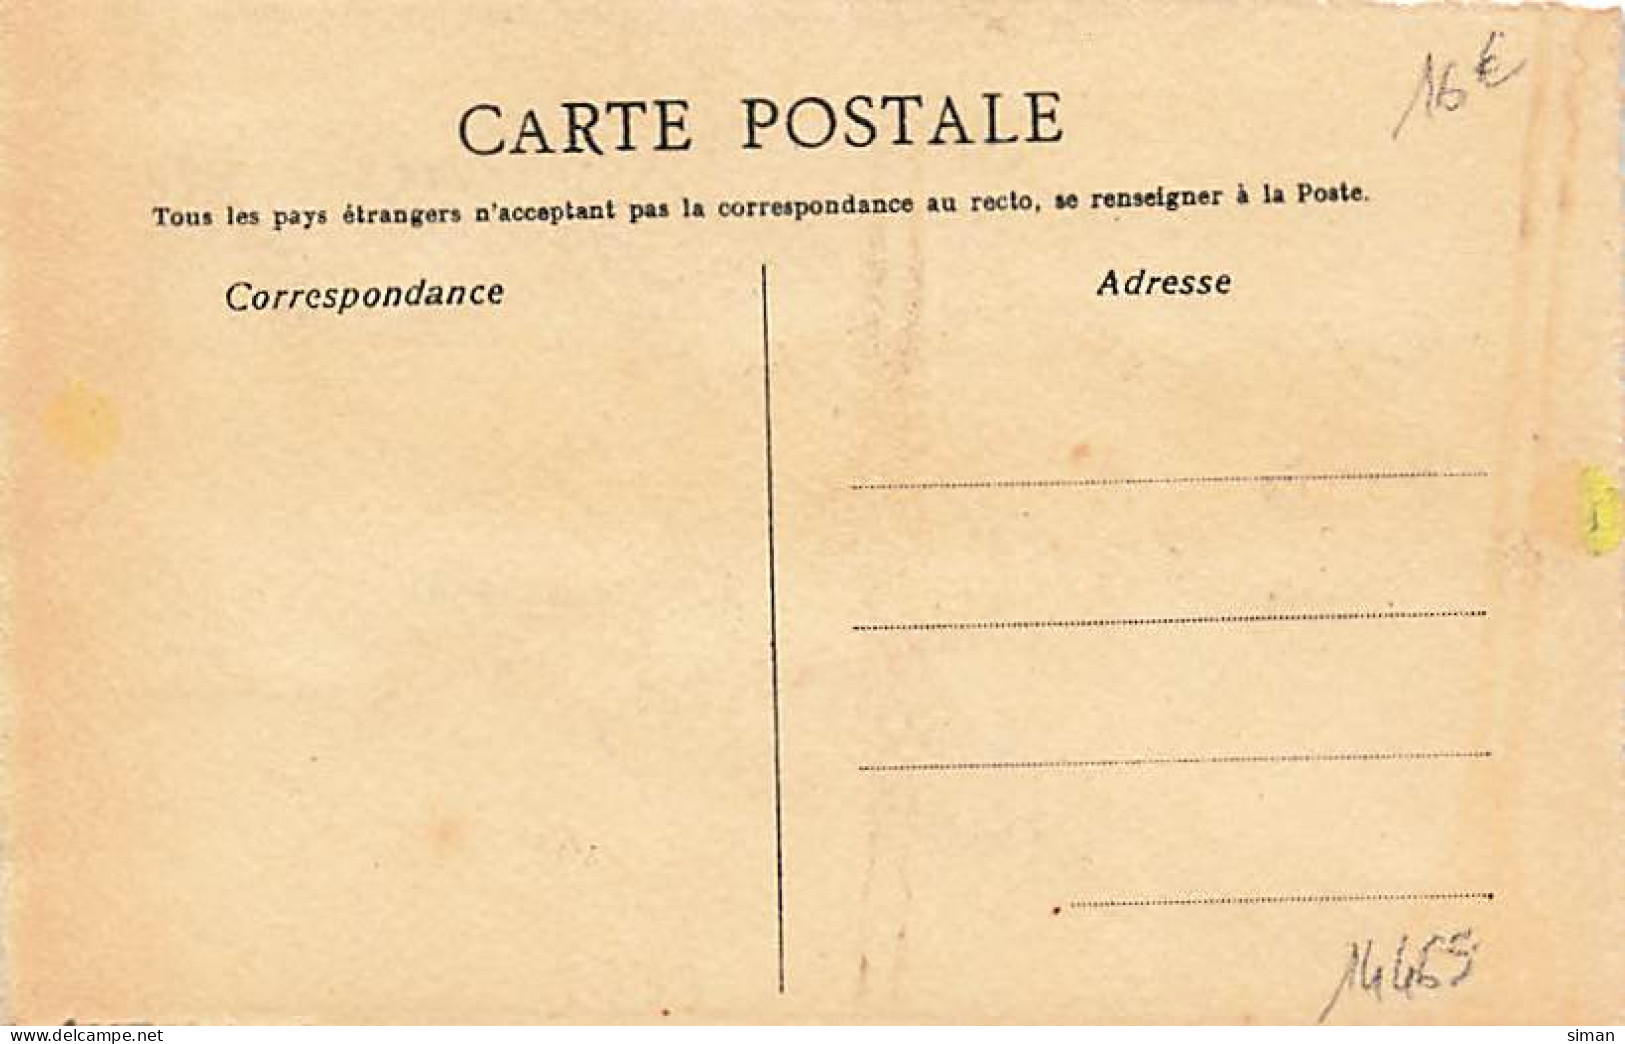 N°24465 - Carte Peinte à La Main - Rouge Pour Les Lèvres, Poudre ... - Susie - La Nouvelle Offensive - 1900-1949